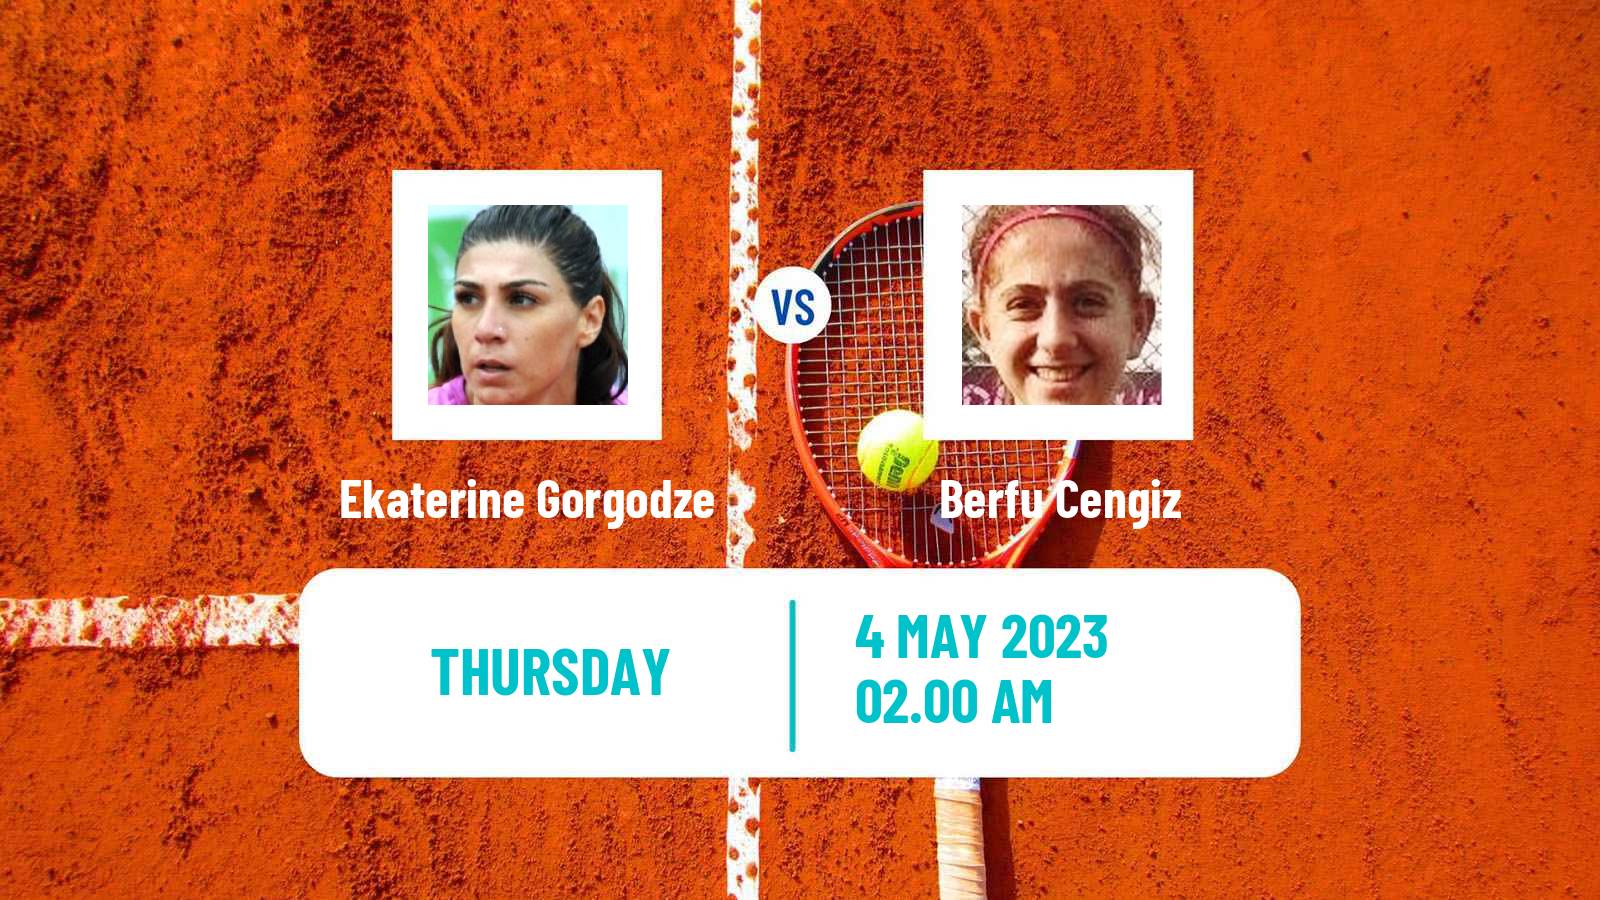 Tennis ITF Tournaments Ekaterine Gorgodze - Berfu Cengiz